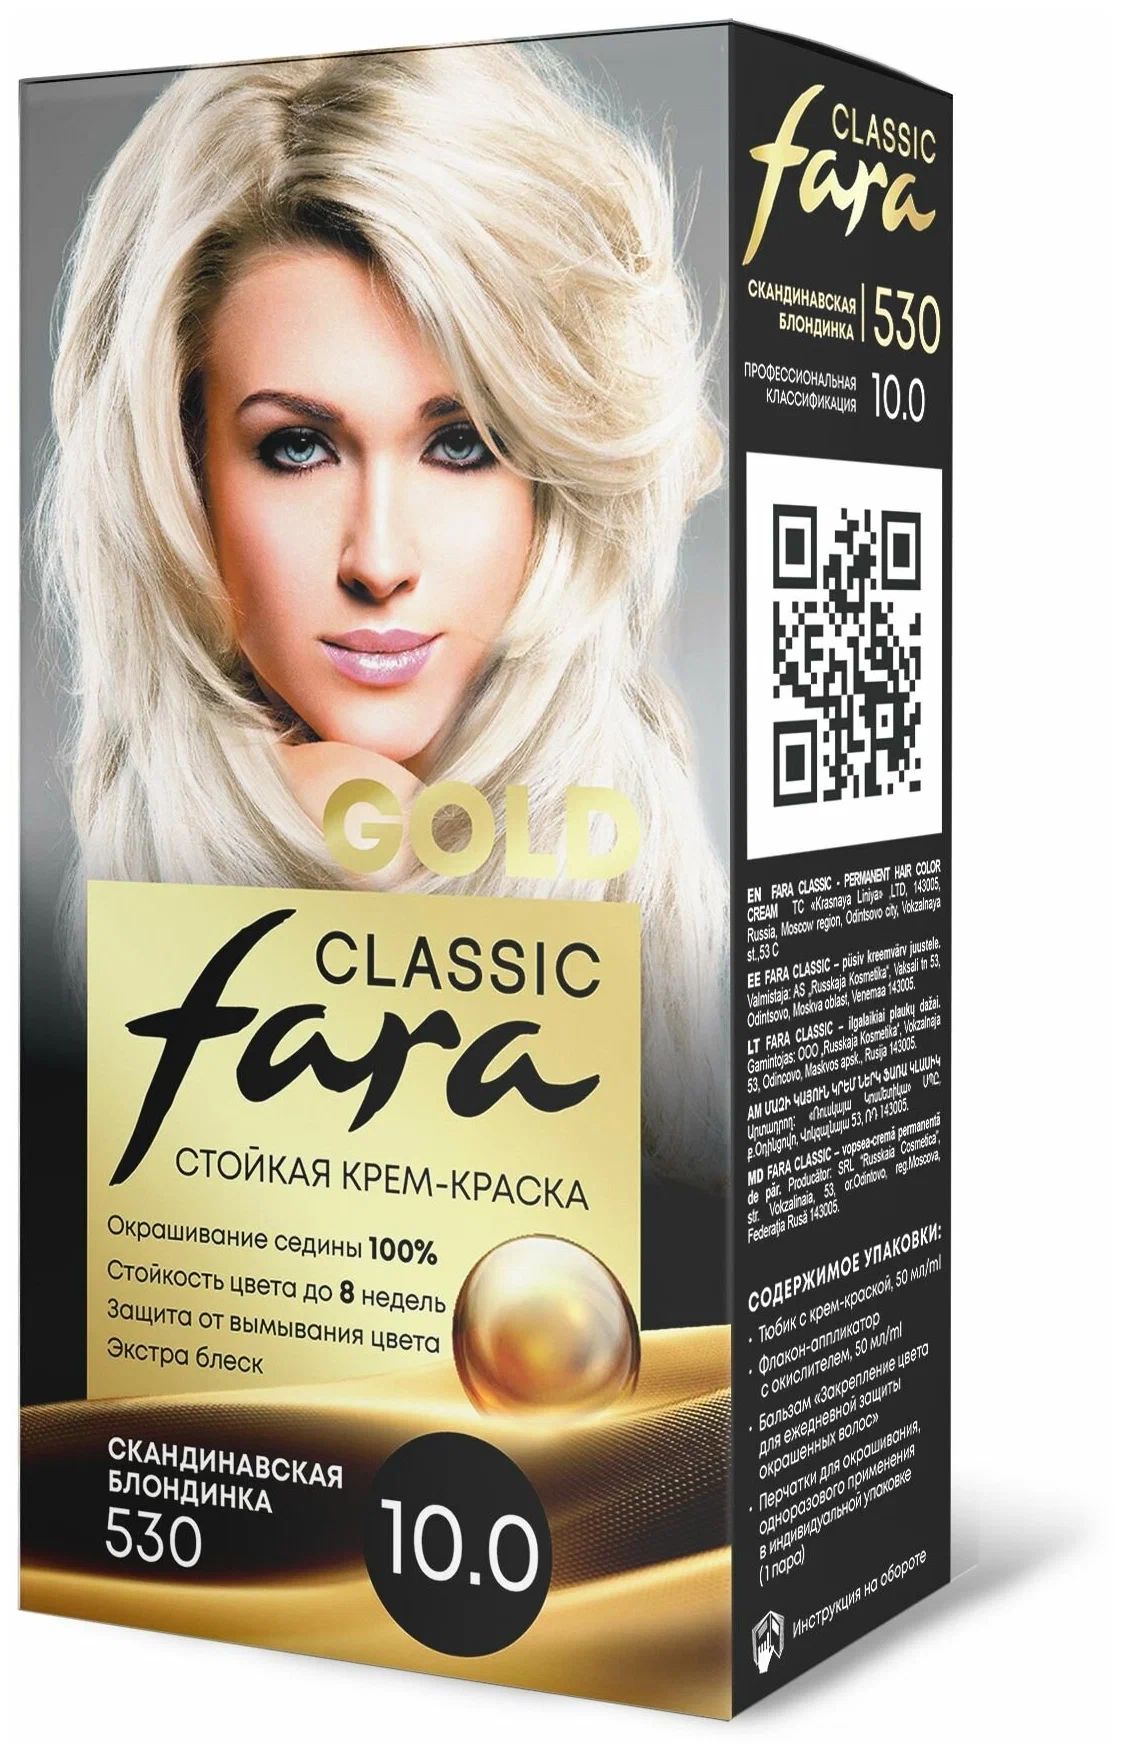 Крем-краска для волос Fara Classic Gold 530 скандинавская блондинка 10.0, 140 г сборник статей к 85 летию в с храковского